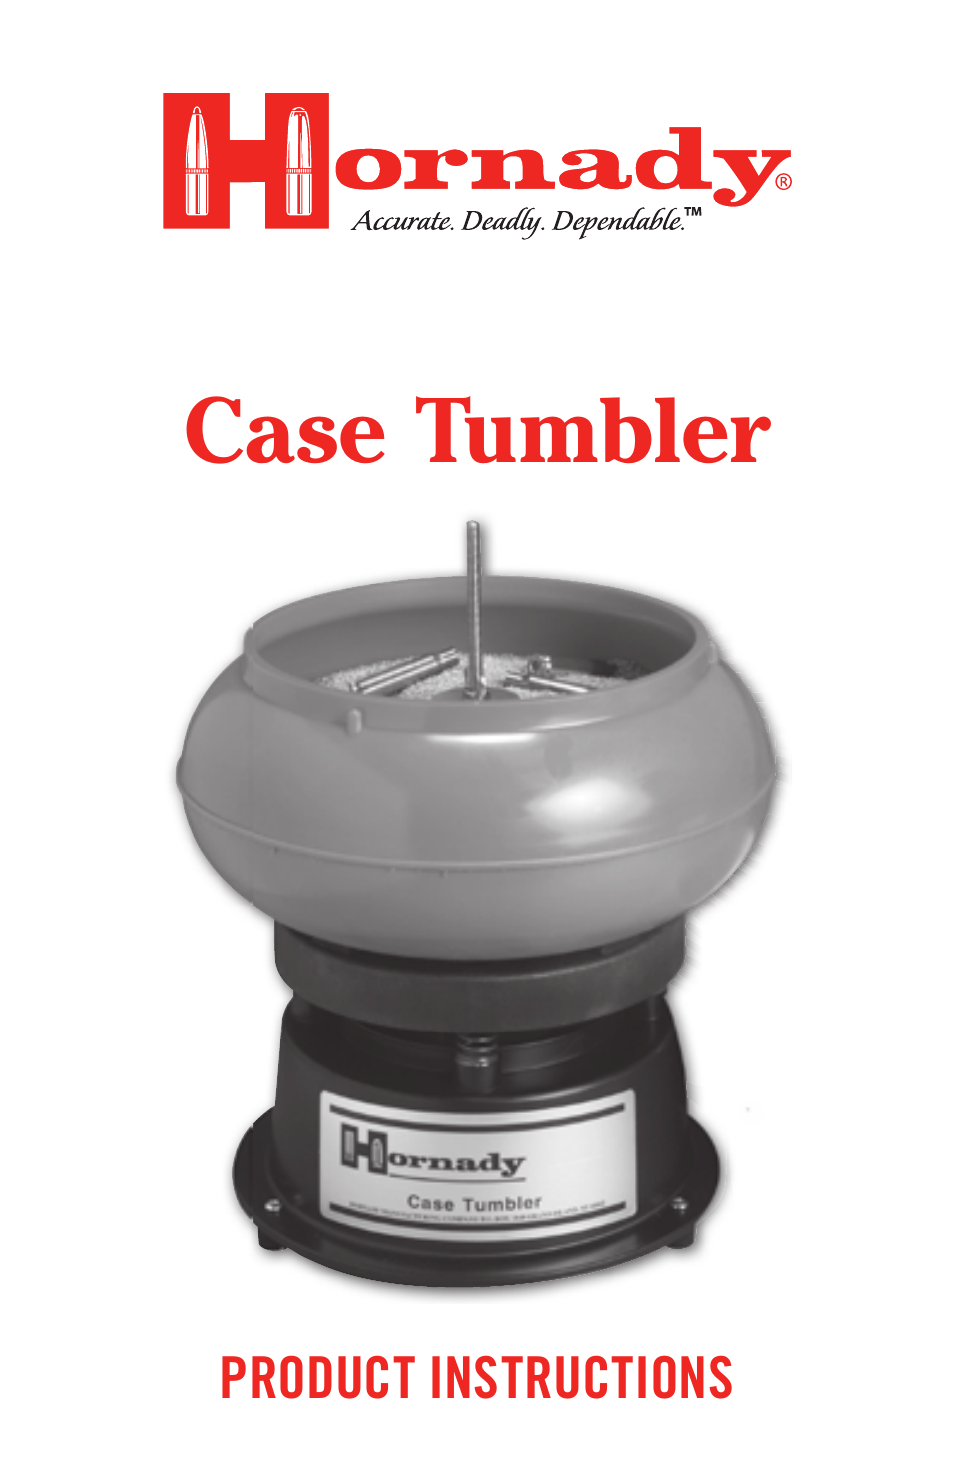 Case Tumbler